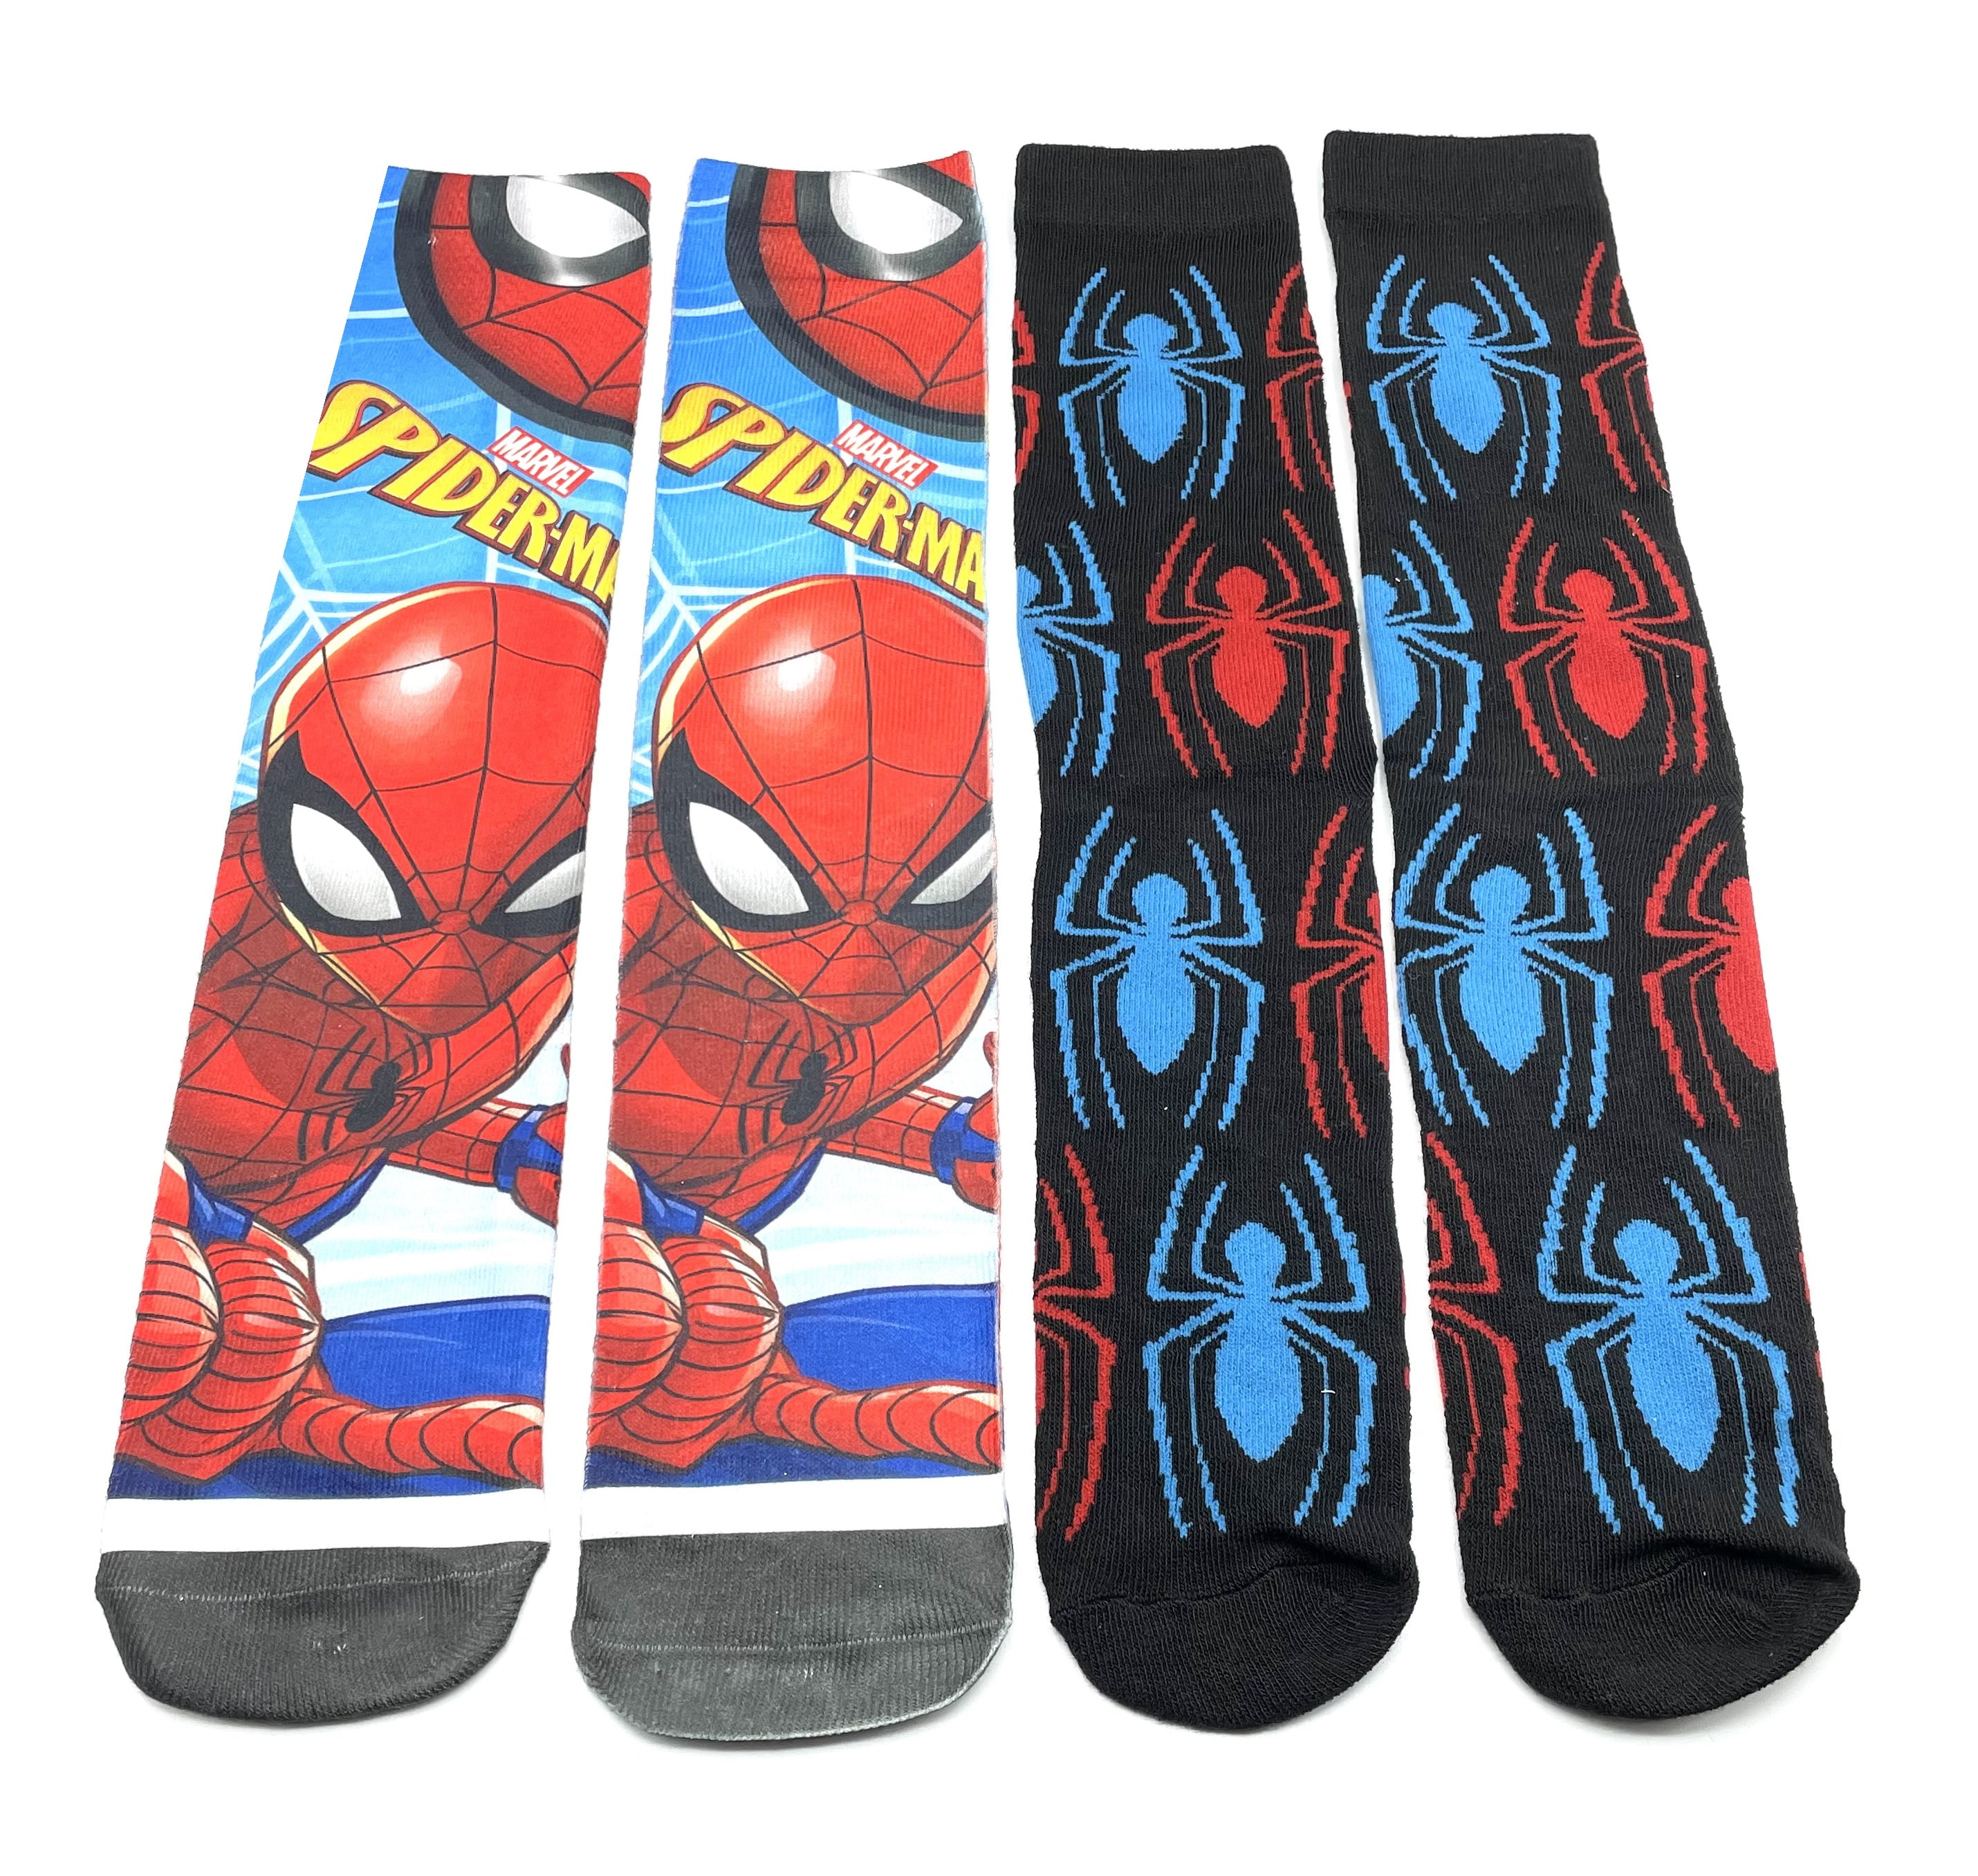 Marvel Avengers Assemble Boy's Toddler Socks 3 Pair Set Size 2T-4T NWT 